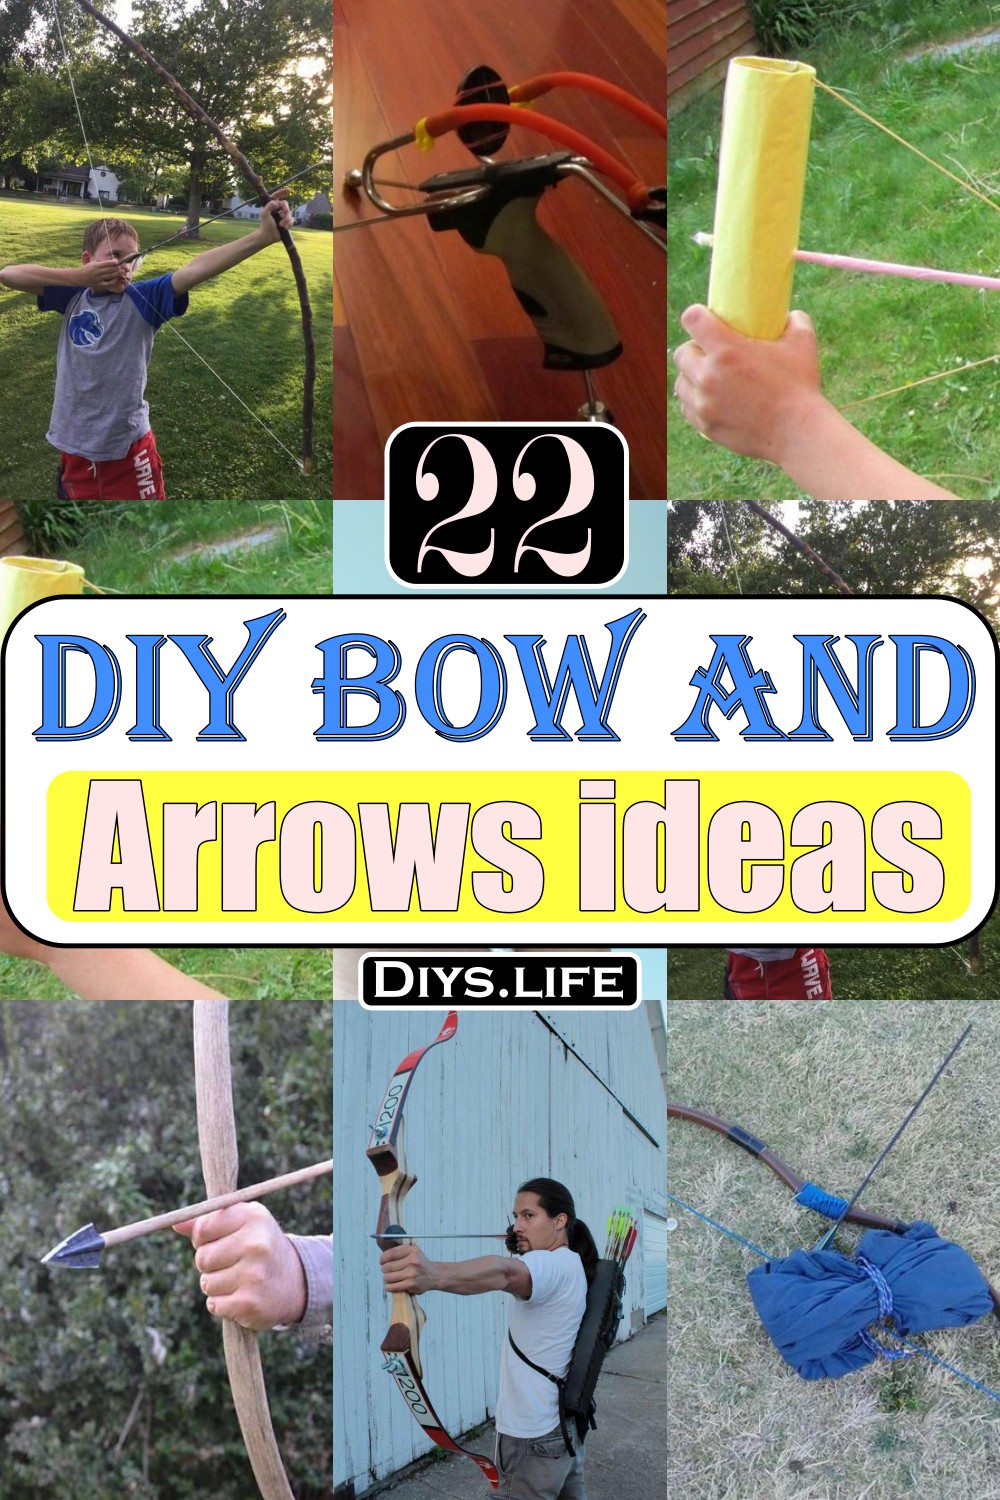 DIY Bow And Arrows ideas